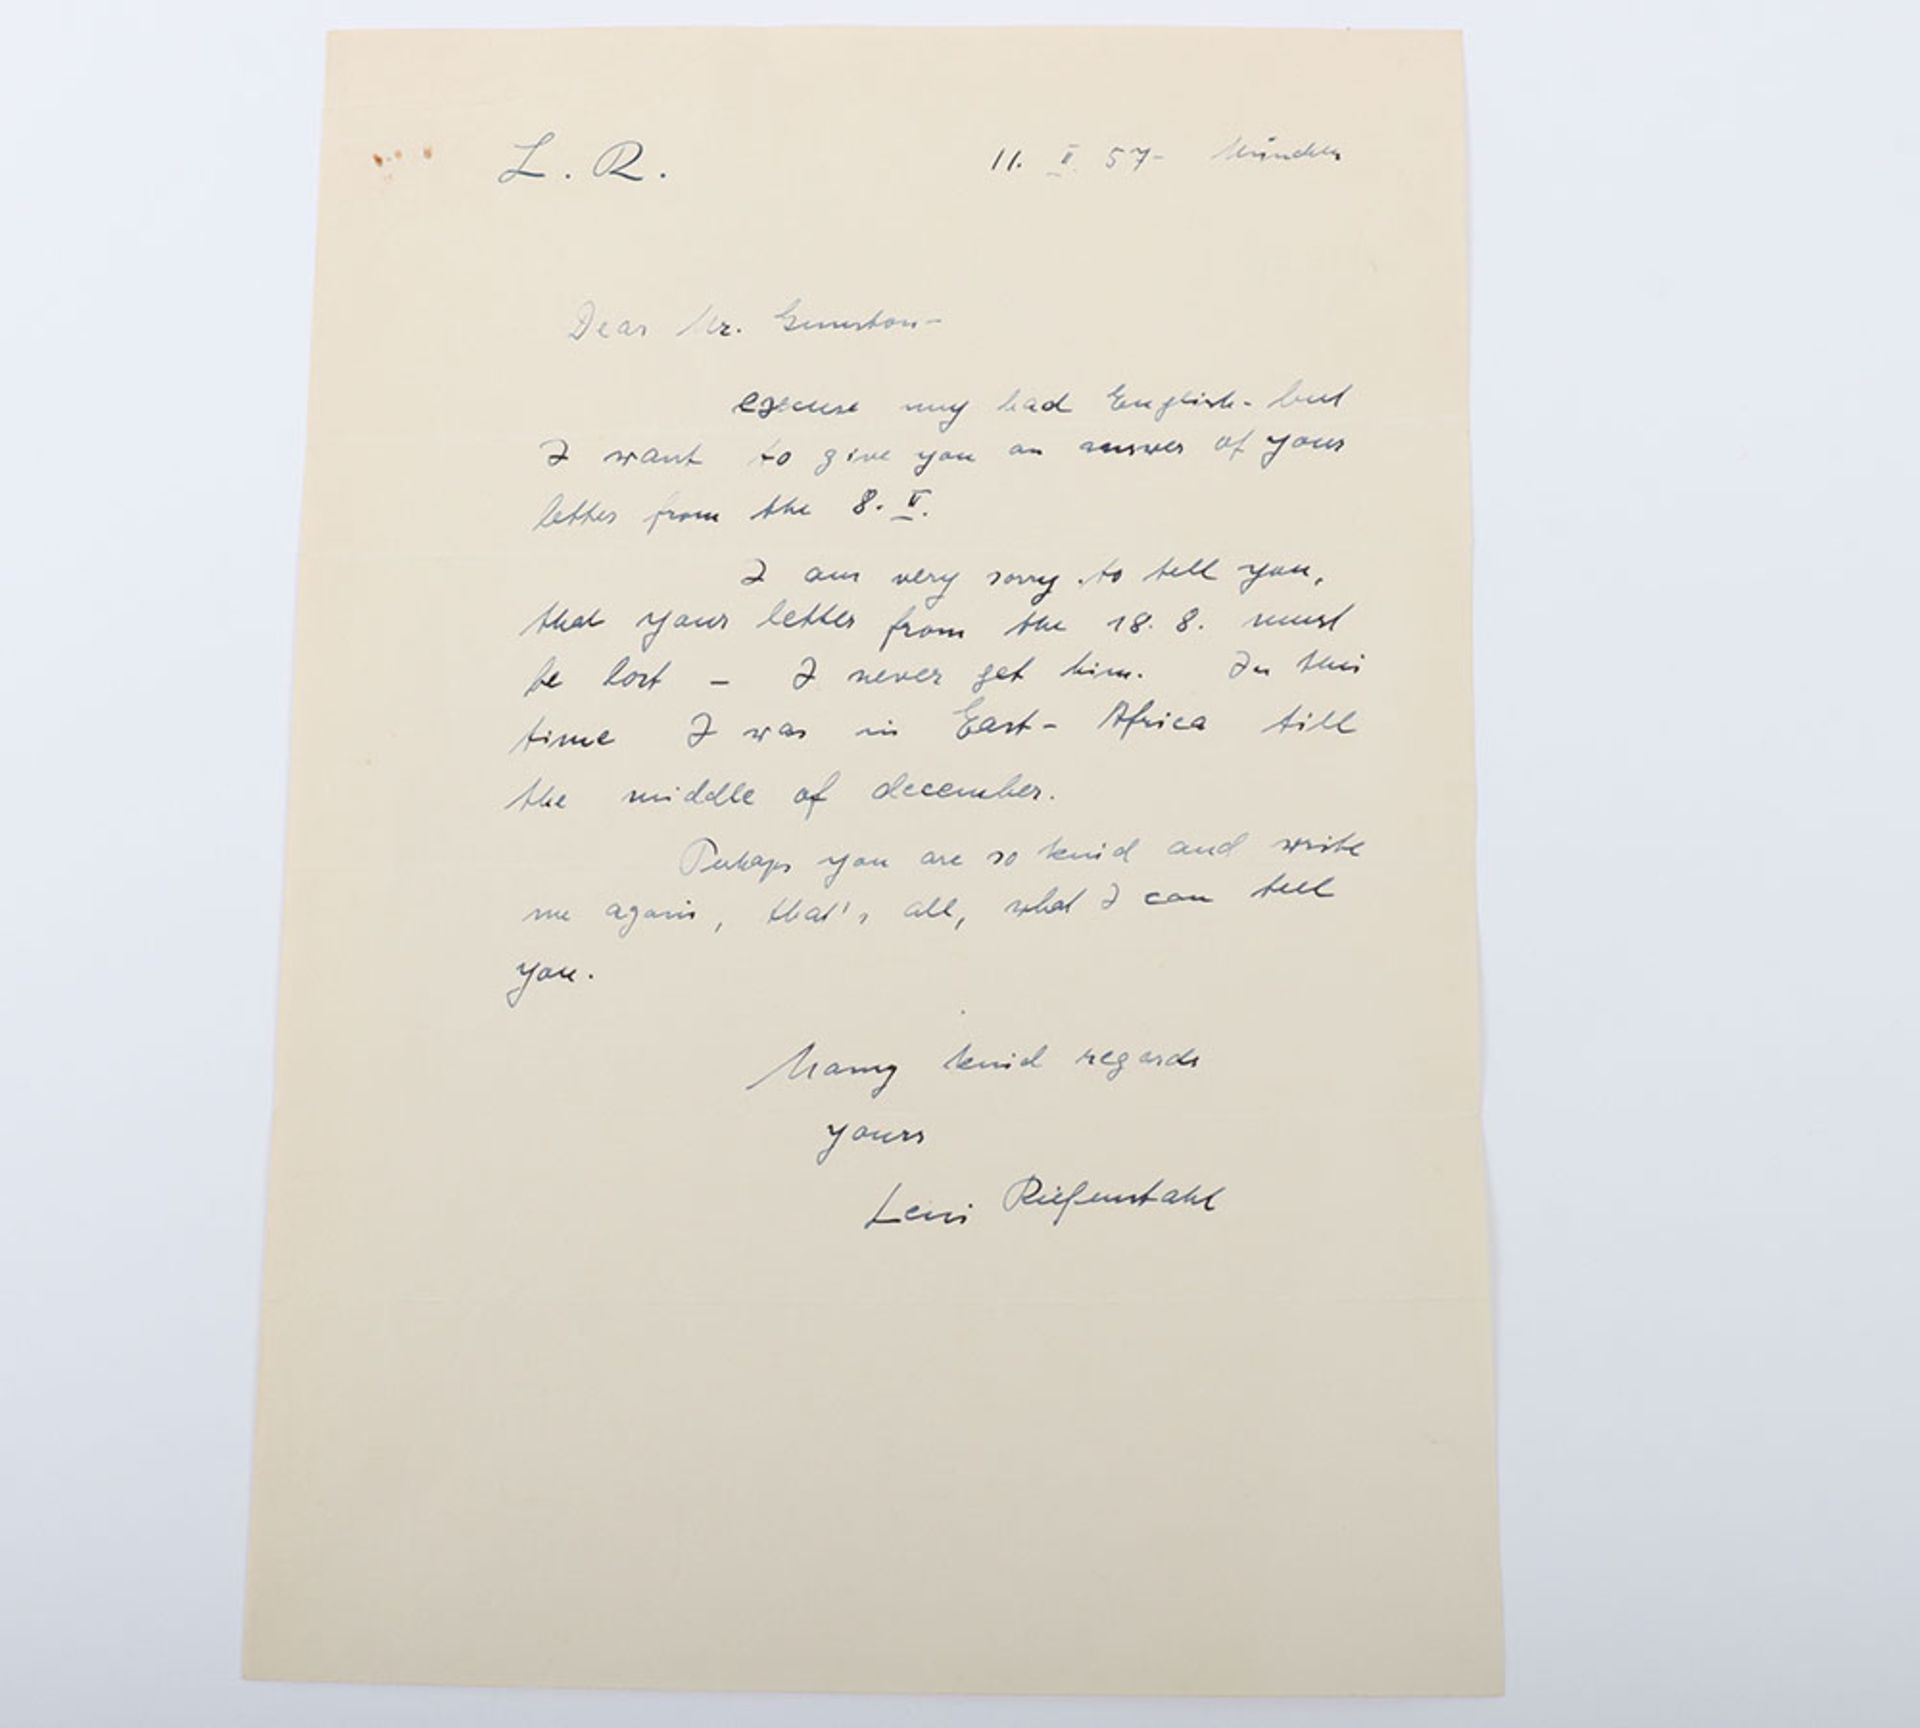 Leni Riefenstahl. Famous German film director signed letter